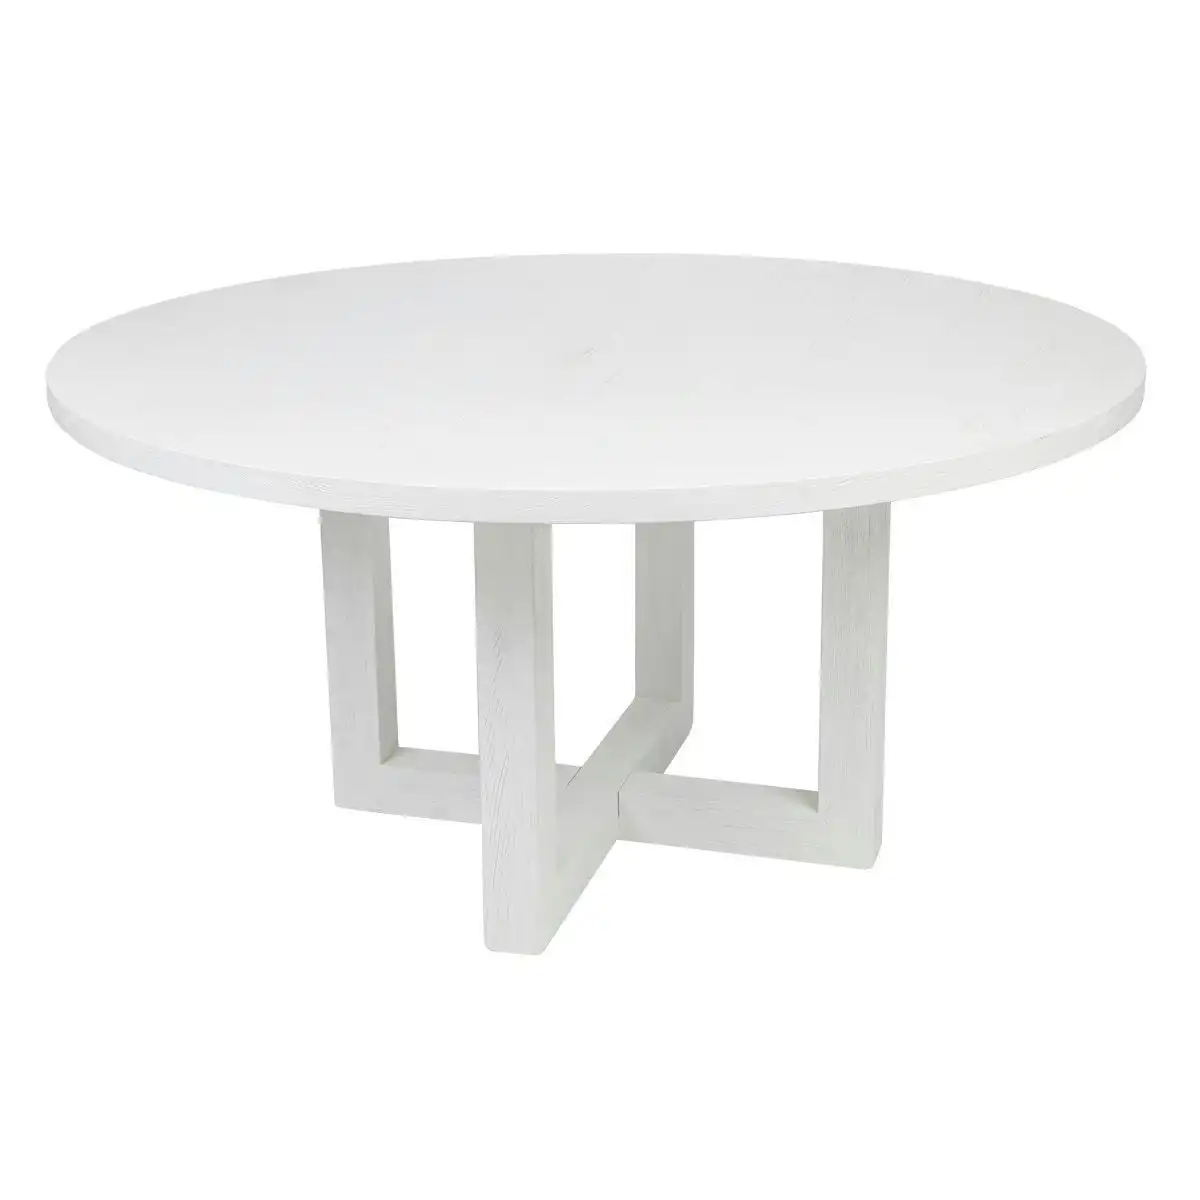 Leeton Round Dining Table - 1.5m White